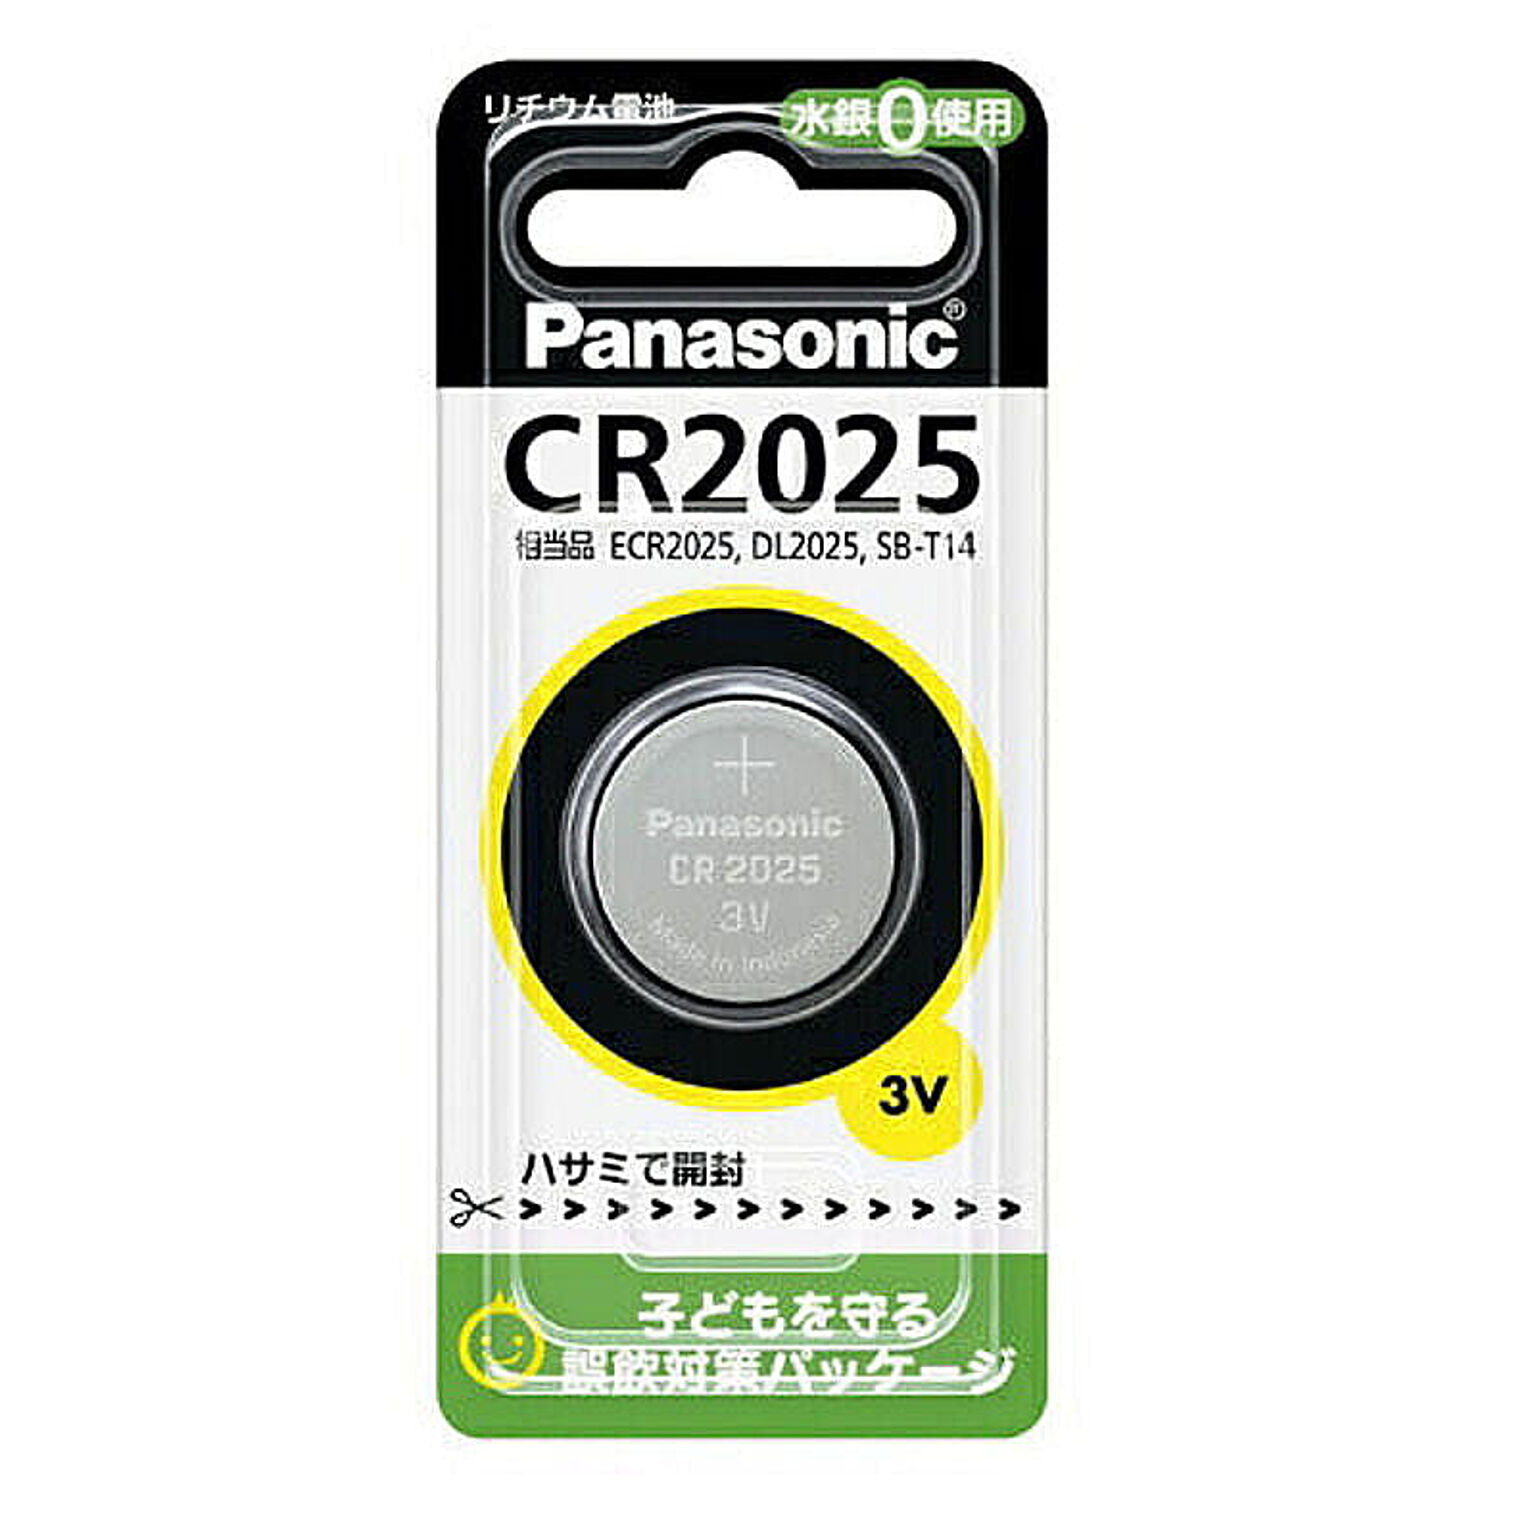 パナソニック Panasonic コイン形リチウム電池 ボタン電池 3V 1個入 CR2025P CR-2025 管理No. 4902704242341